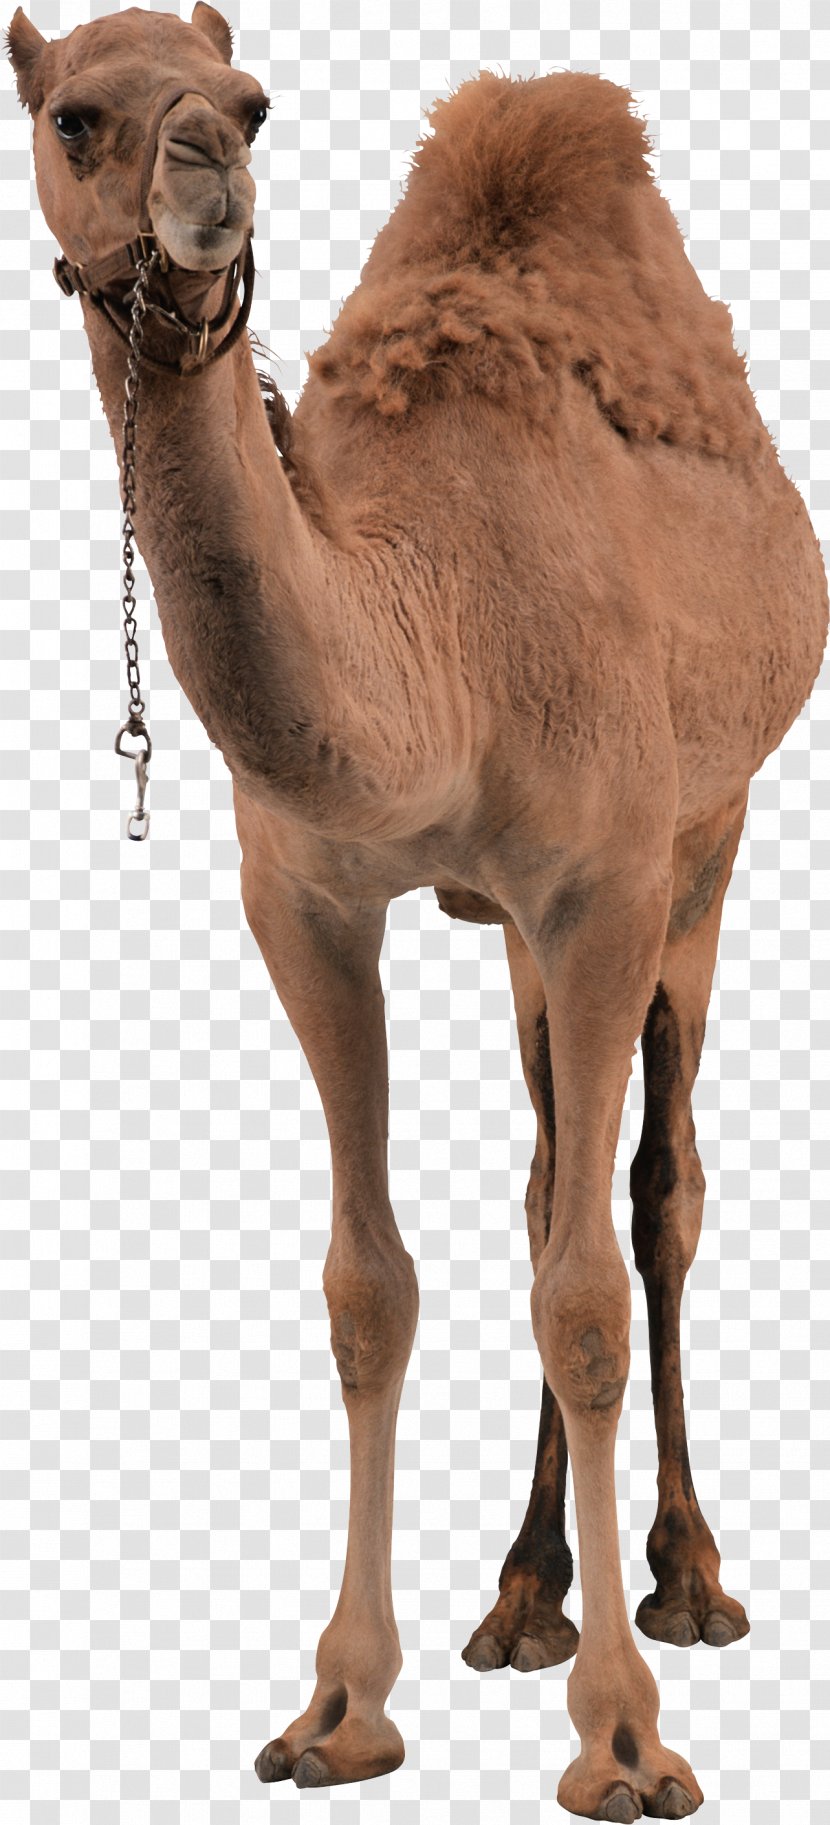 Dromedary Bactrian Camel - Image Transparent PNG